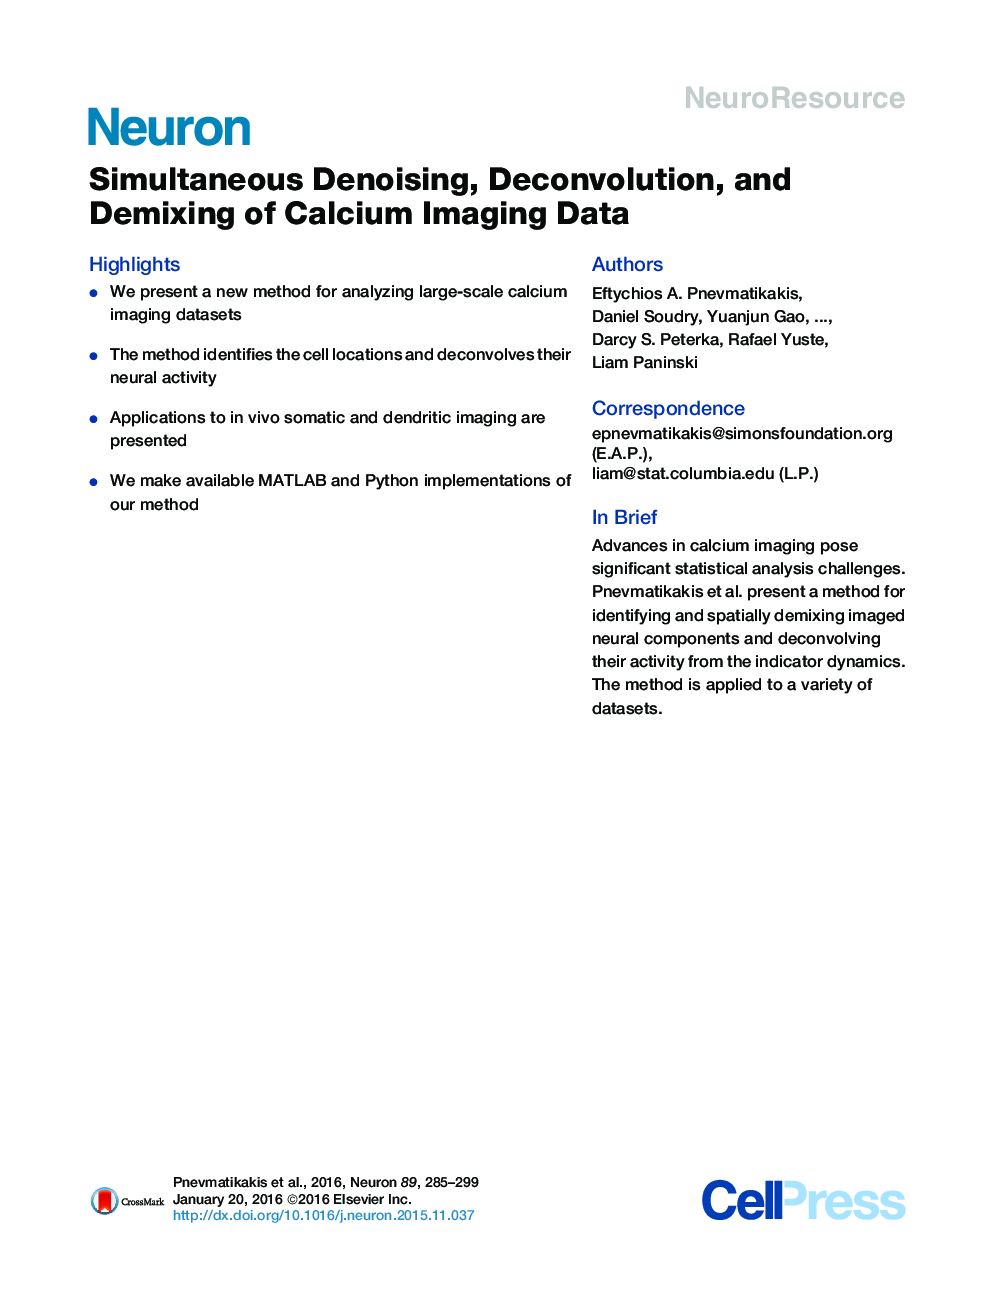 Simultaneous Denoising, Deconvolution, and Demixing of Calcium Imaging Data